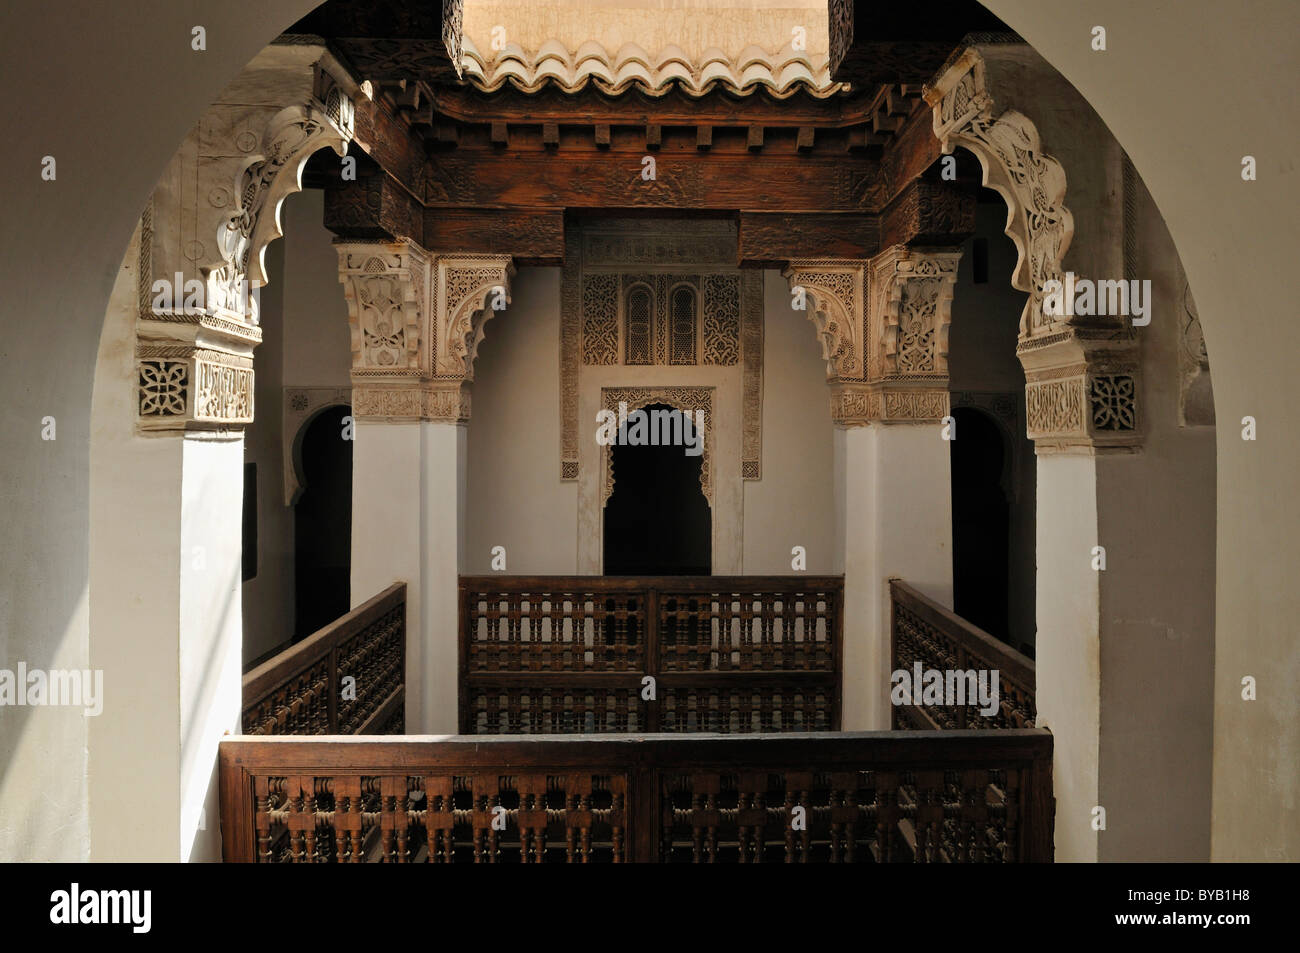 La decorazione interna della medersa Ben Youssef nella Medina di Marrakesh, Sito Patrimonio Mondiale dell'Unesco, Marocco, Africa del Nord Foto Stock